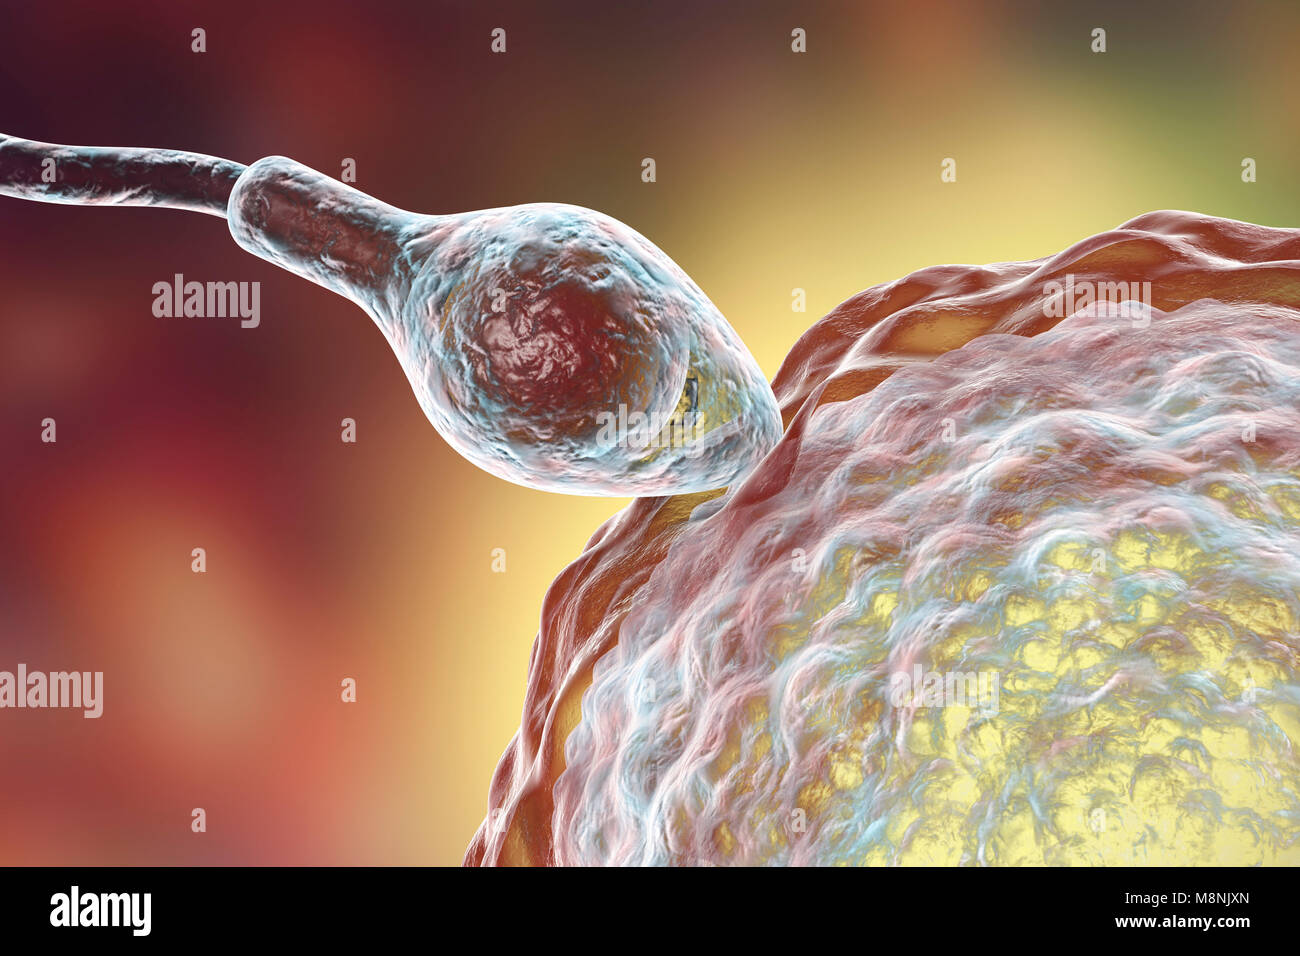 Spermien befruchtete Ei, computer Abbildung. Die Samenzellen hat einen ovalen Kopf und ein Haar - wie Schwanz, es schlägt mit einem schleudertrauma Bewegung zu schwimmen. Die menschliche Frau produziert in der Regel ein einziges großes Ei aus dem Eierstock, während der männliche rund 300 Millionen viel kleiner Spermien Releases. Die Samenzellen, die Reise durch den Uterus (Gebärmutter) und die Eileiter das Ei zu erreichen. Die spermien müssen durchdringen eine dicke Schicht um das Ei; dieses Eindringen wird mit Hilfe von Enzymen, die in der Kopf des Sperma enthalten. Nur einer kann das Sperma Sicherung mit dem Ei Kern. Düngung mit männlichen und weiblichen genetischen Material geteilt werden. Stockfoto